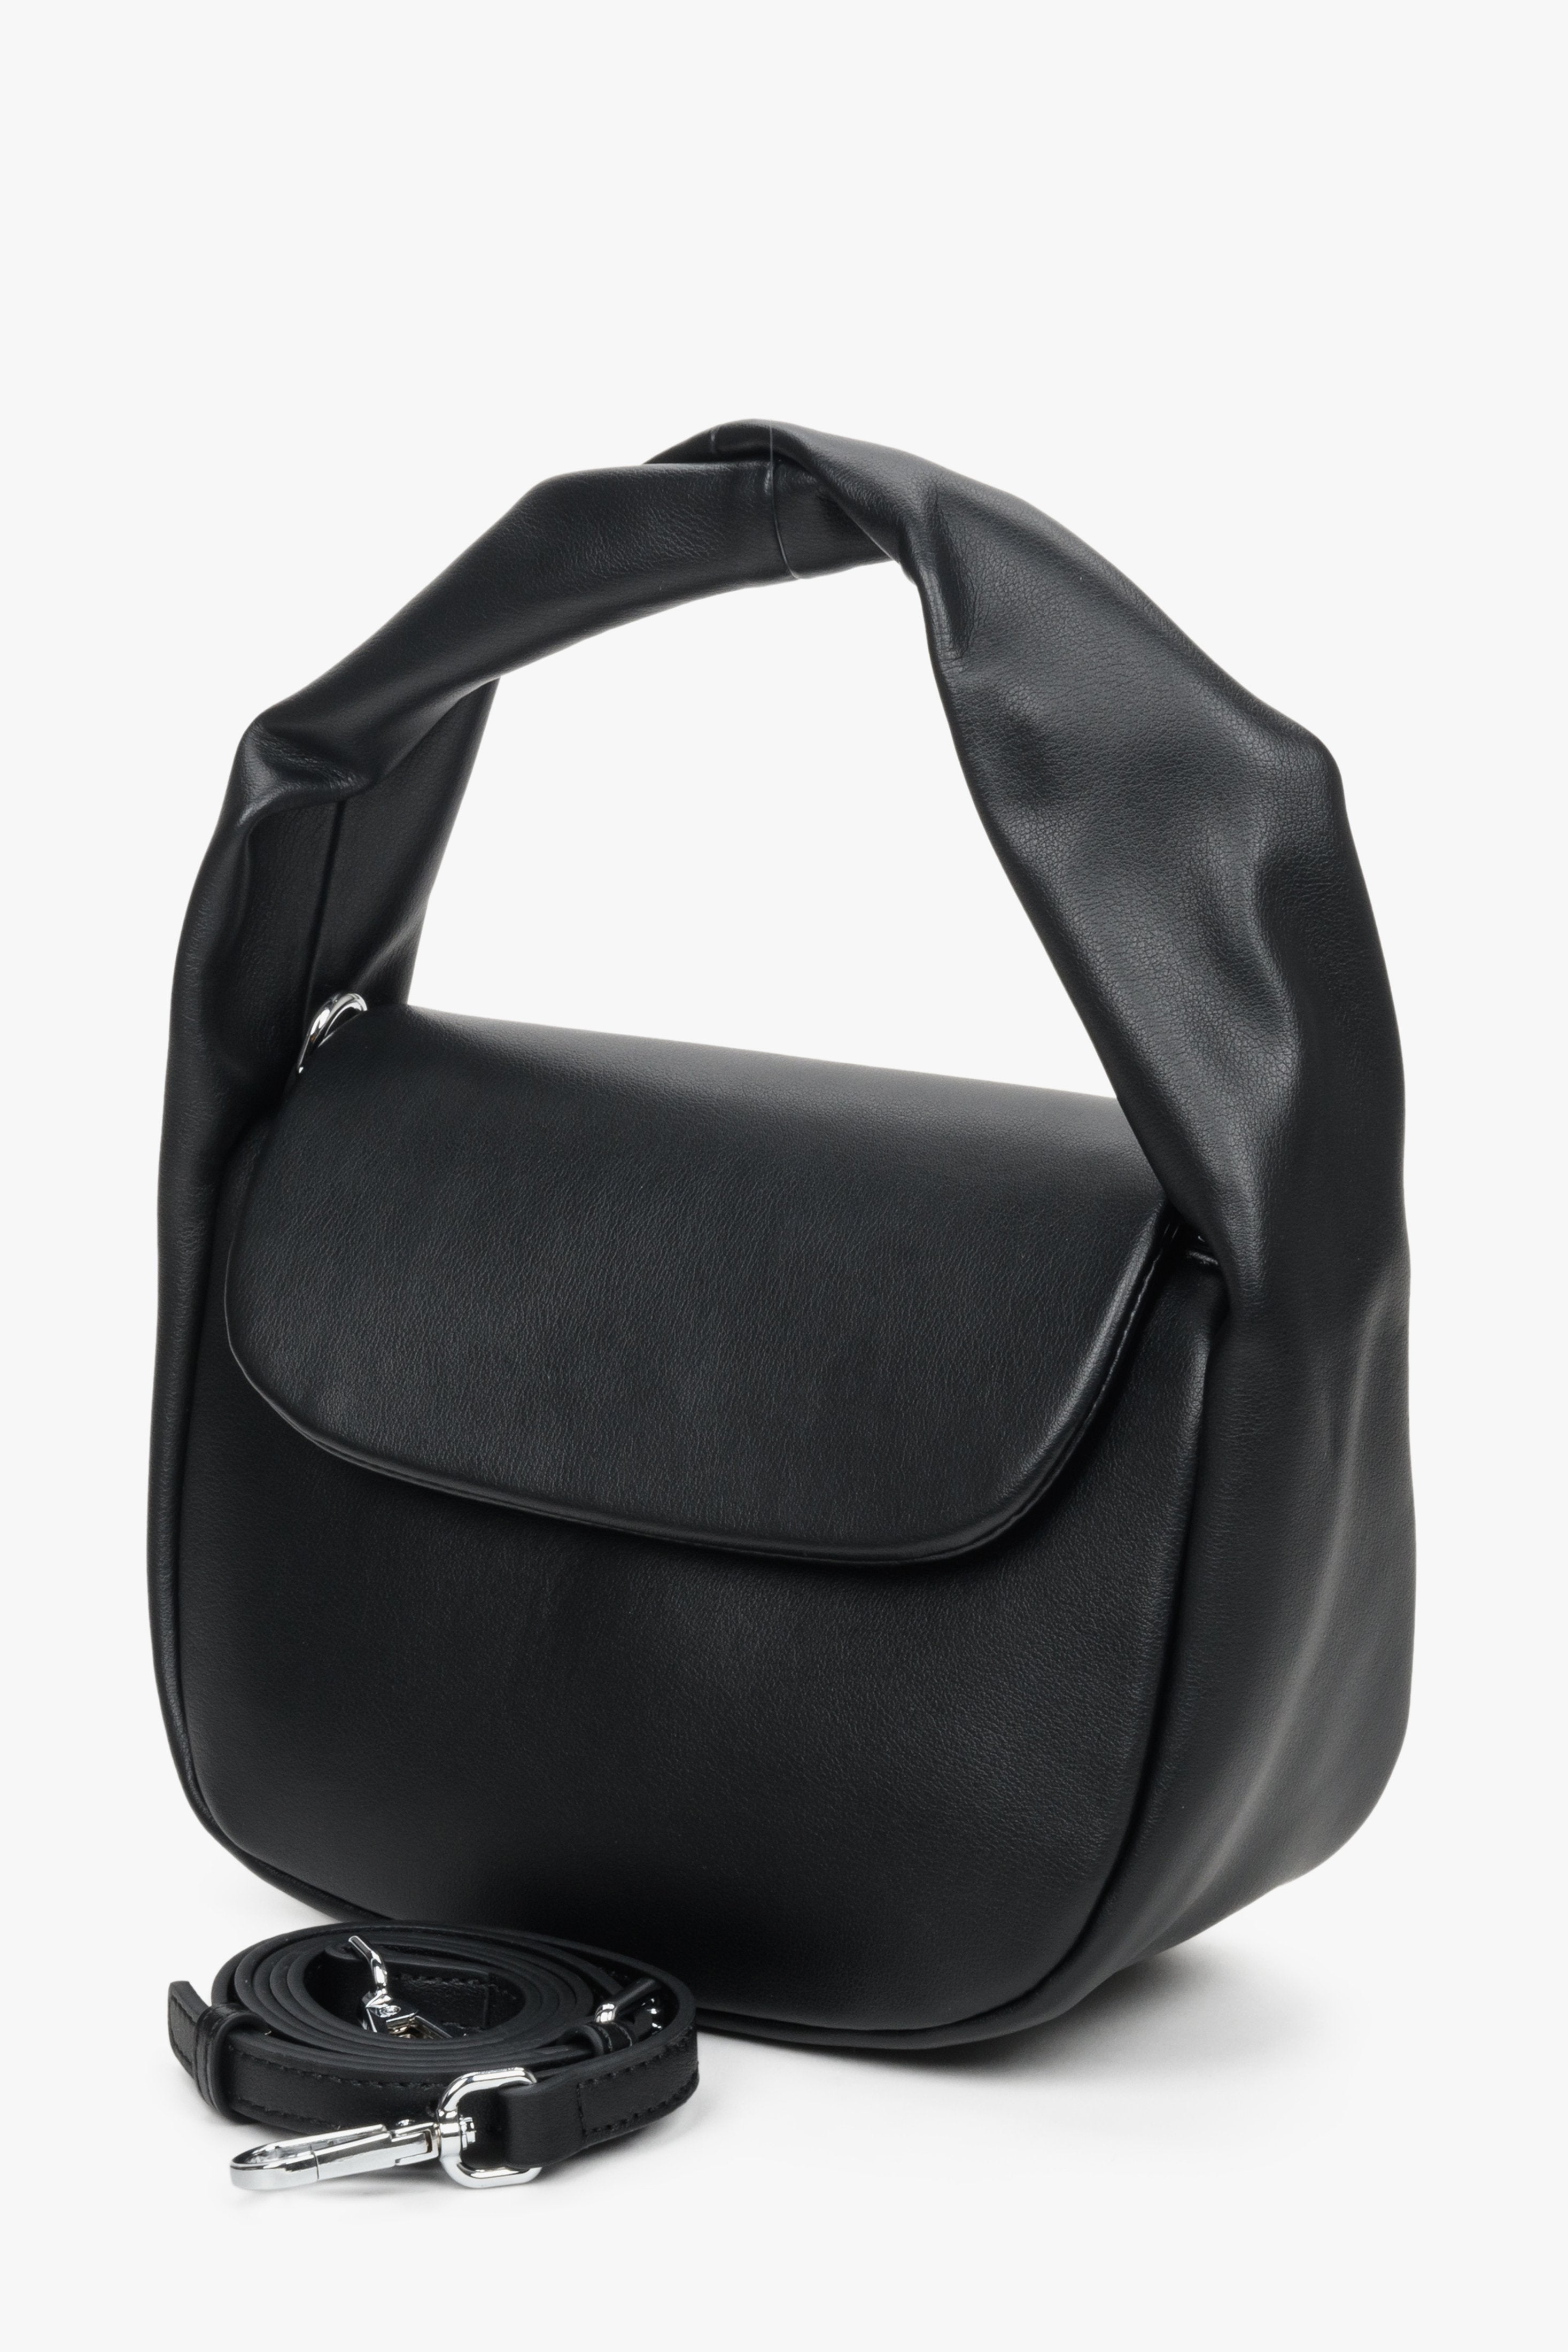 Damska, mała torebka do ręki w kolorze czarnym ze skóry naturalnej marki Estro - prezentacja zestawu.